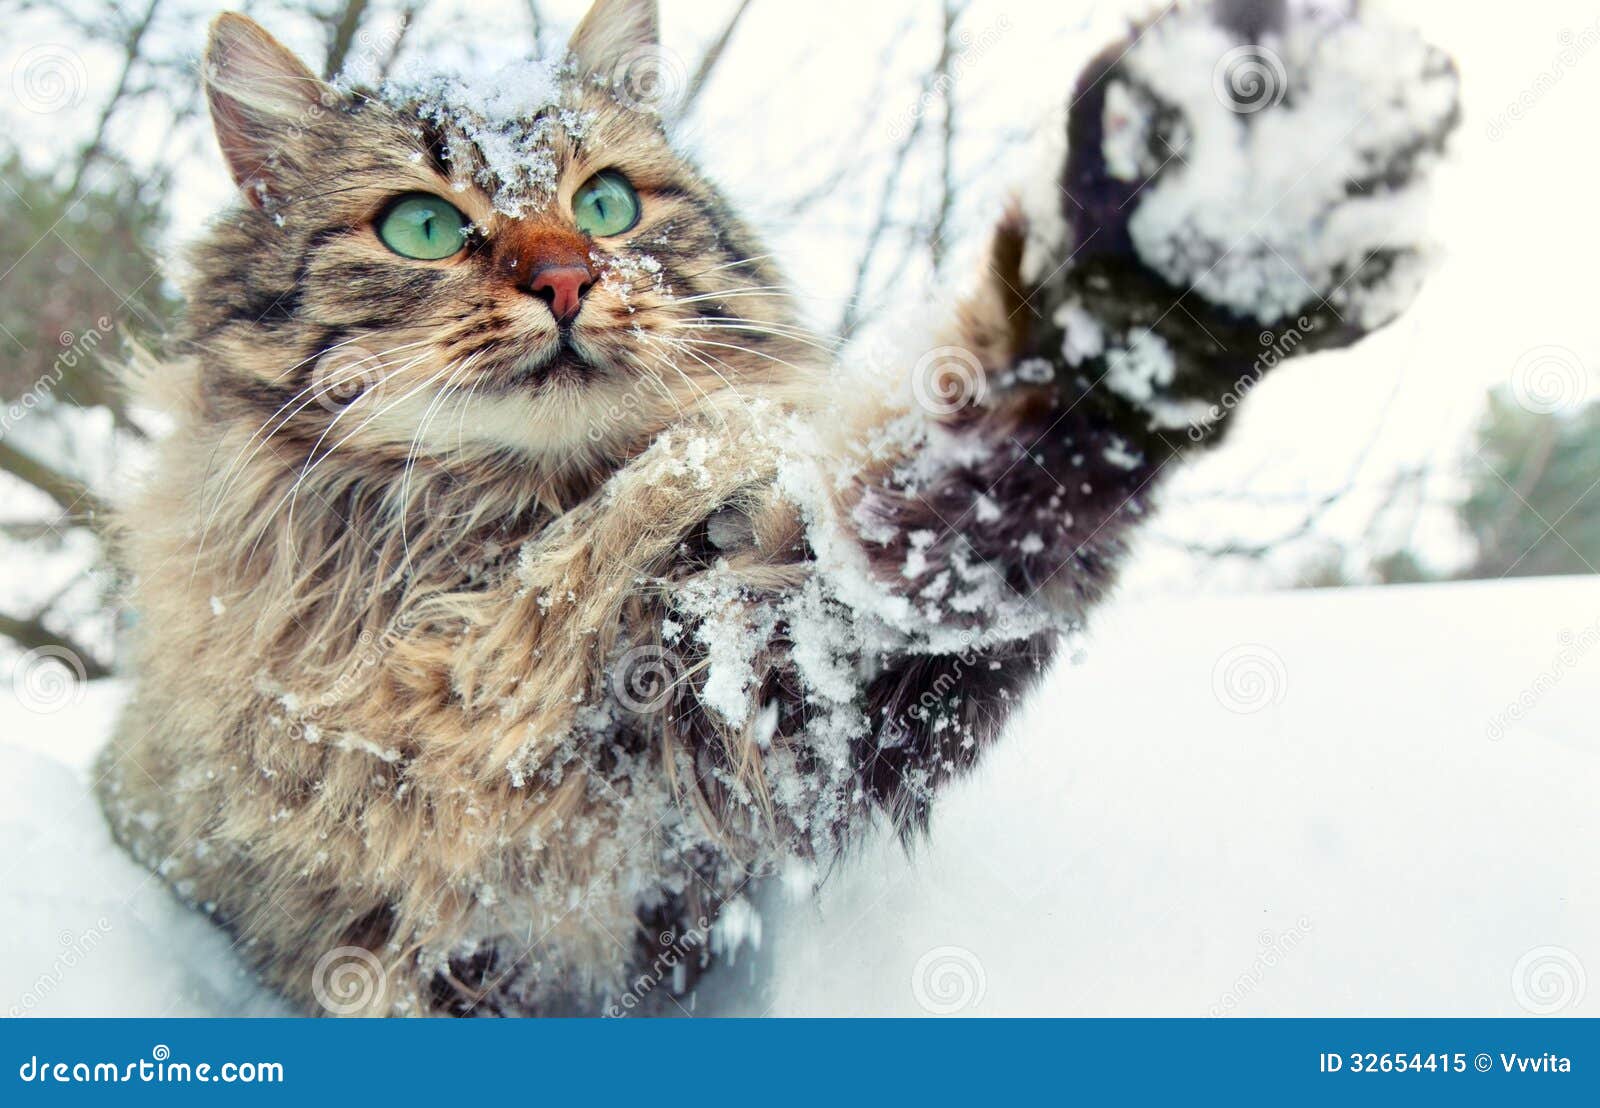 Kat Het Spelen Met Sneeuw Stock Afbeelding. Image Of Binnenlands - 32654415